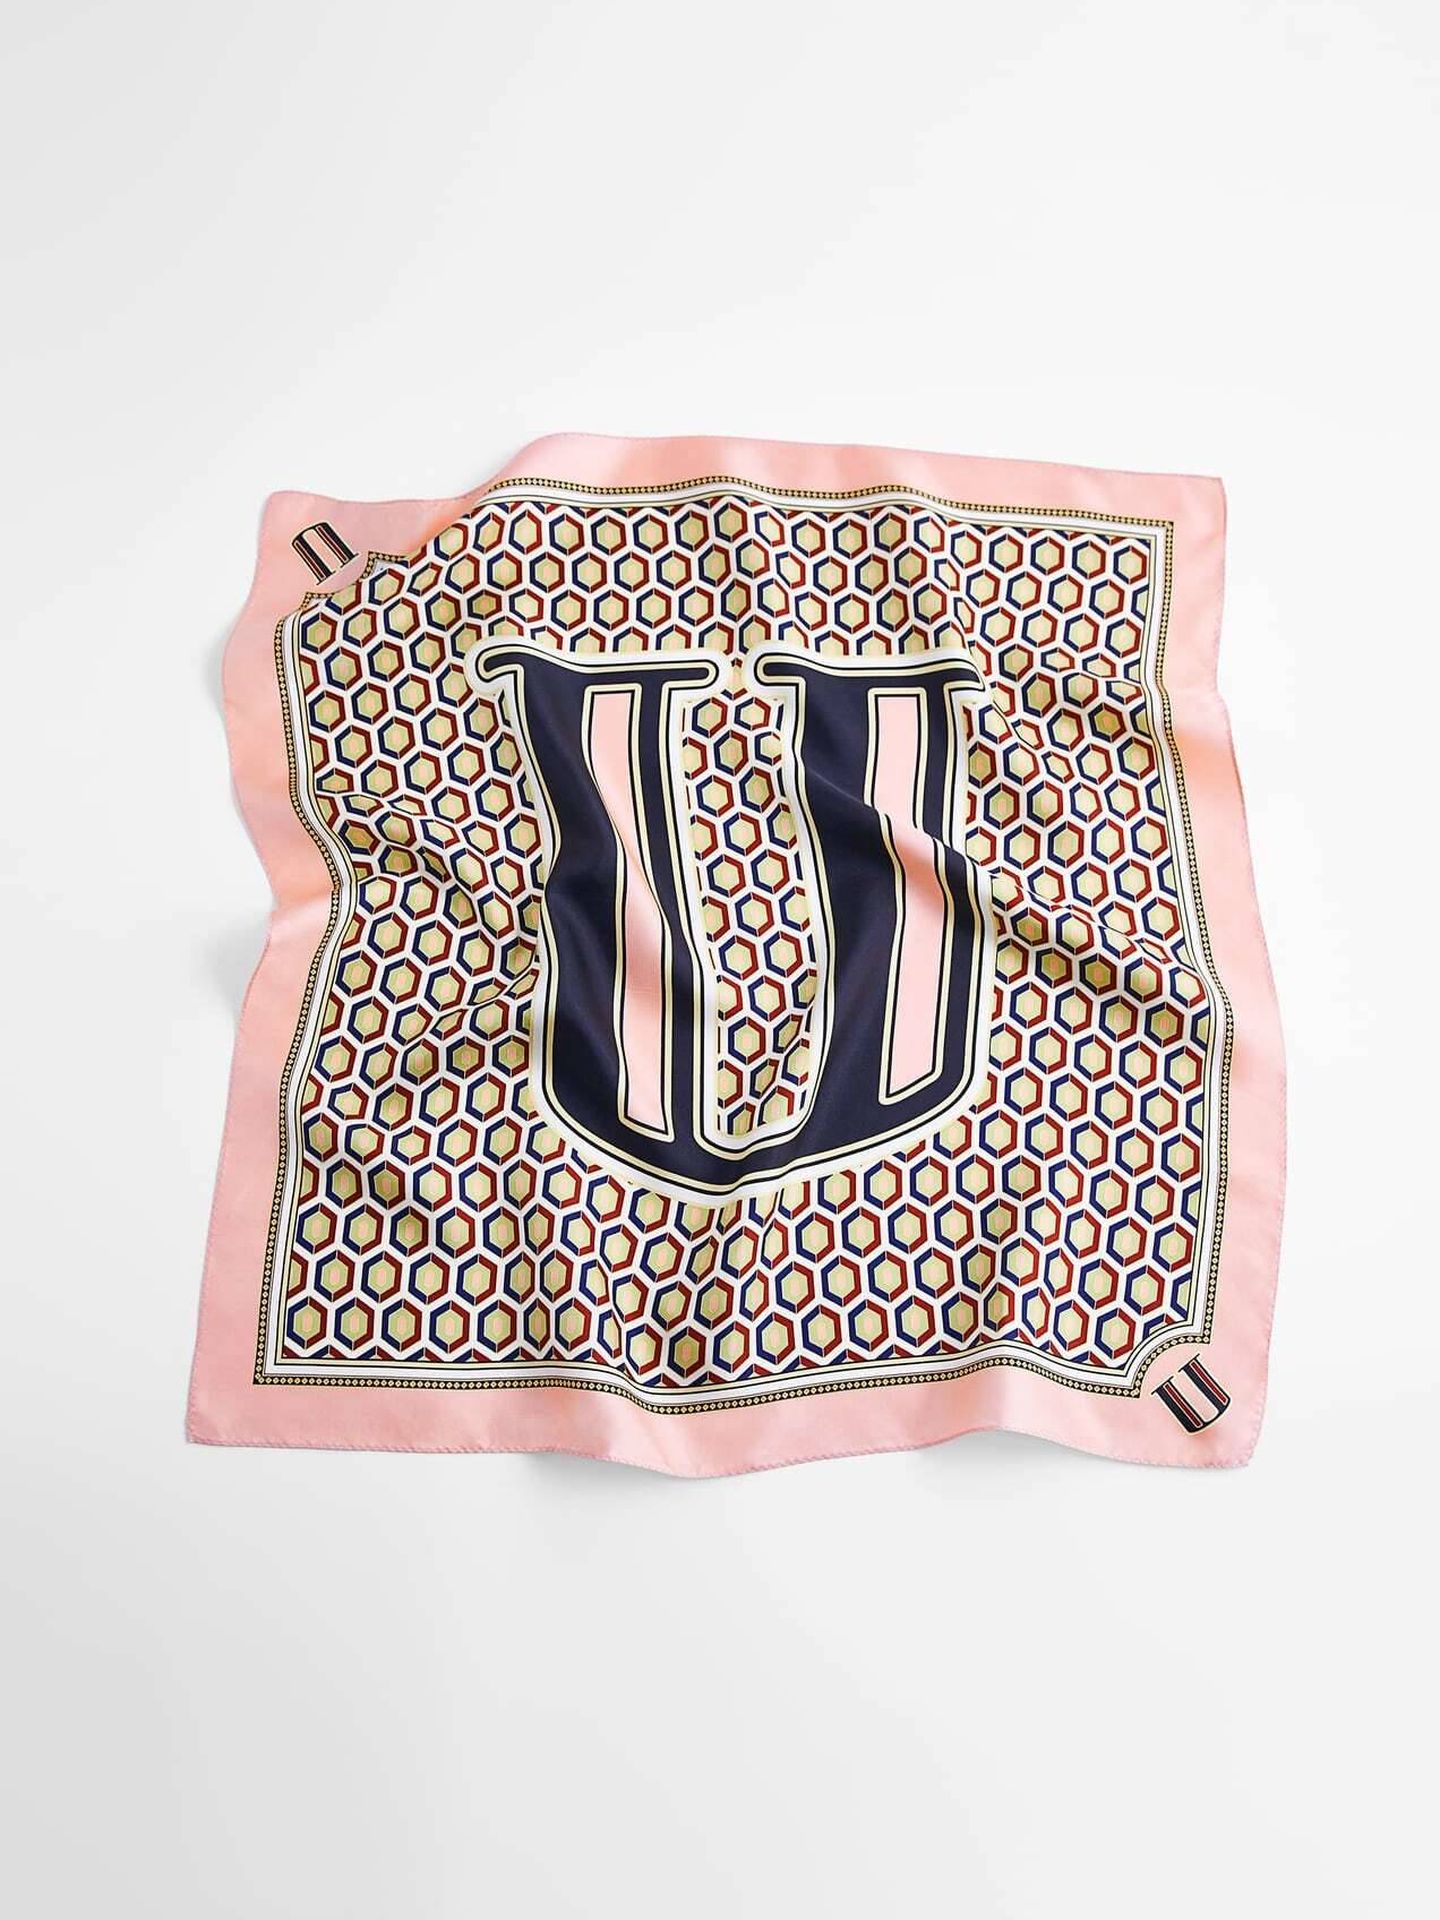 La nueva colección de pañuelos personalizados de Zara. (Cortesía)